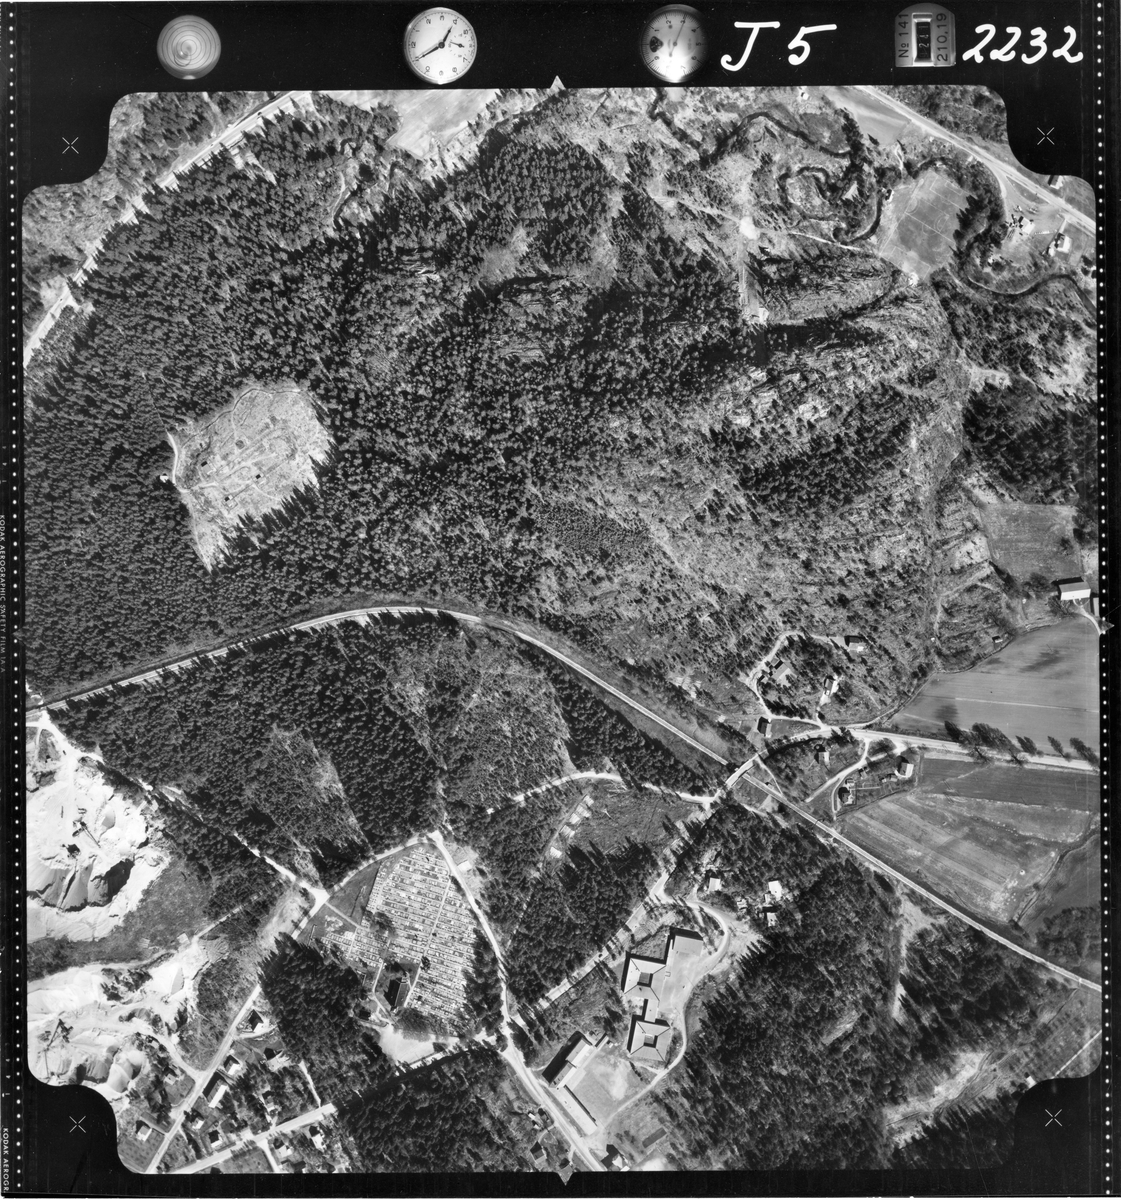 Flyfotoarkiv fra Fjellanger Widerøe AS, fra Porsgrunn Kommune, Tveten, Eidanger. Fotografert 16/05-1962. Oppdrag nr 2232, J05